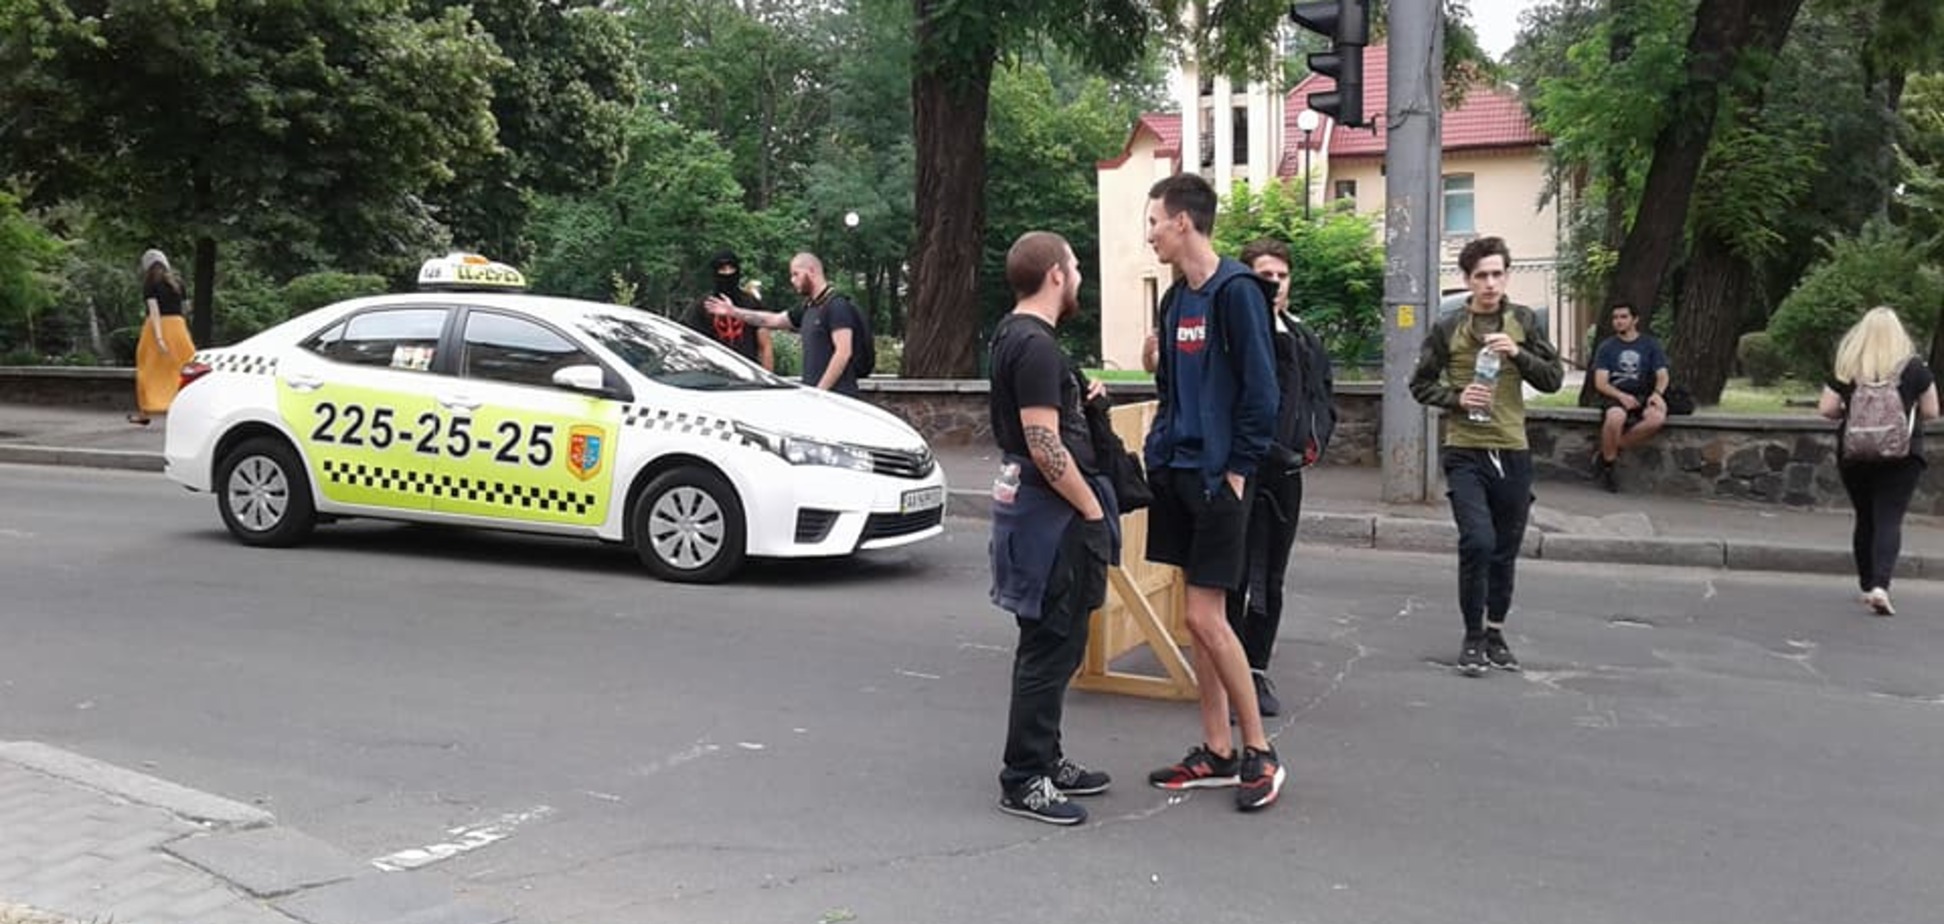 Радикали перекрили дорогу після Маршу рівності в Києві